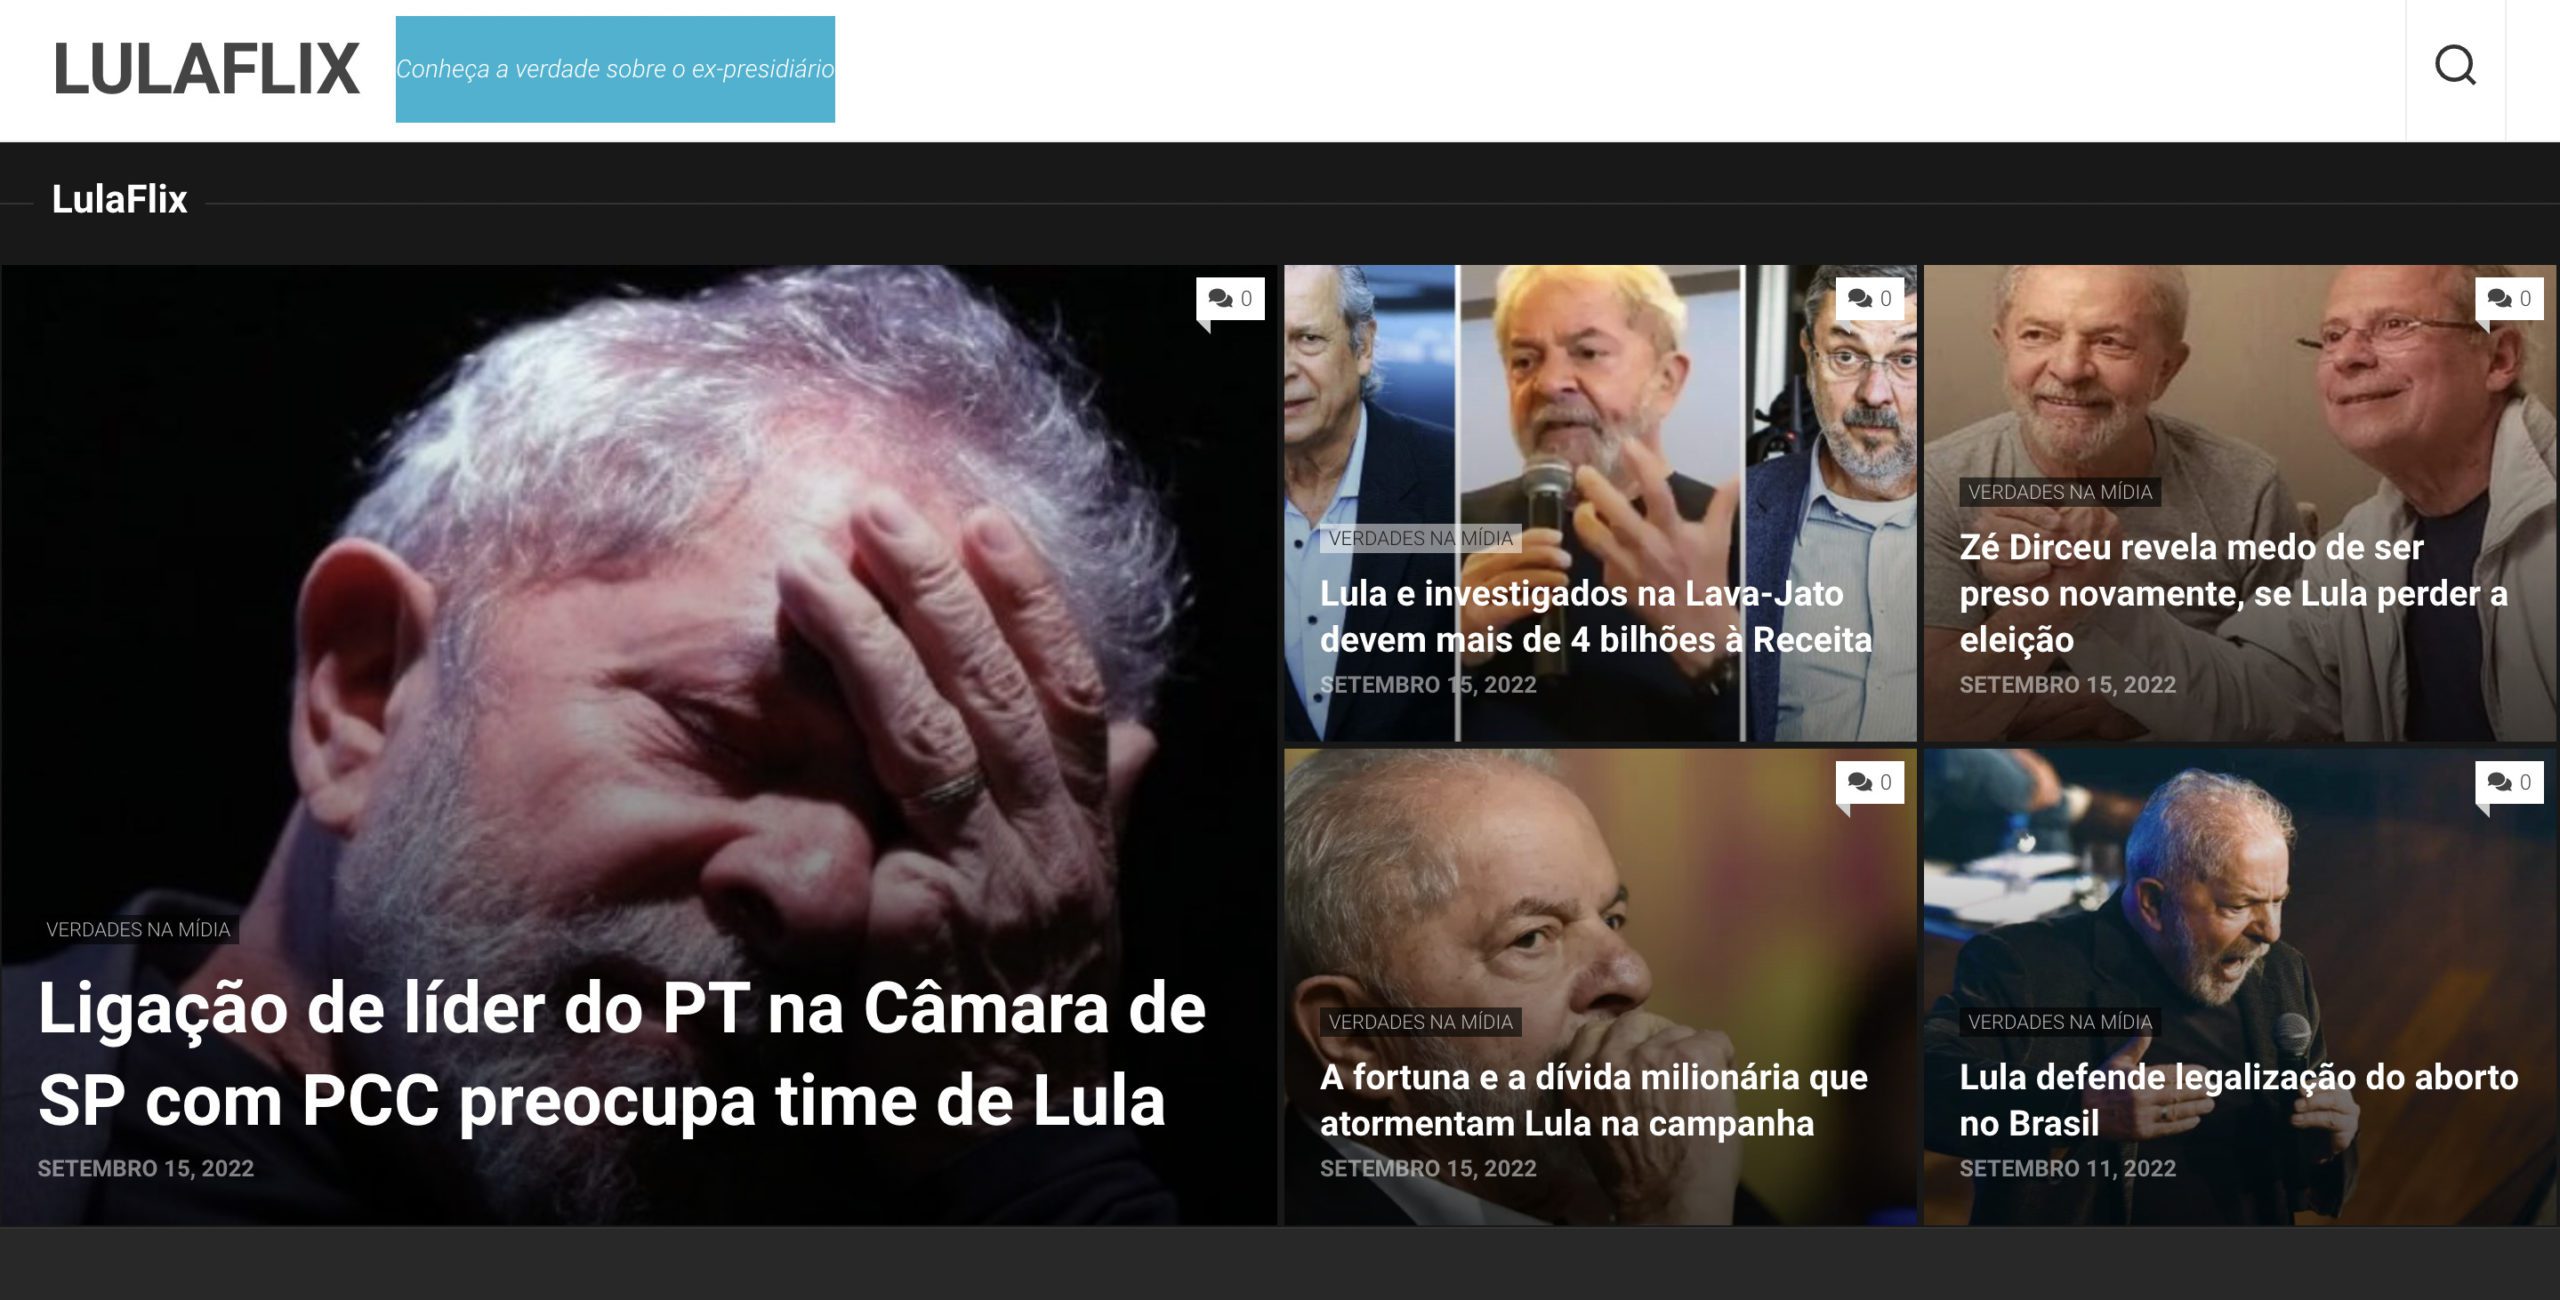 Lula Flix, la página dedicada a difundir noticias falsas sobre Lula.